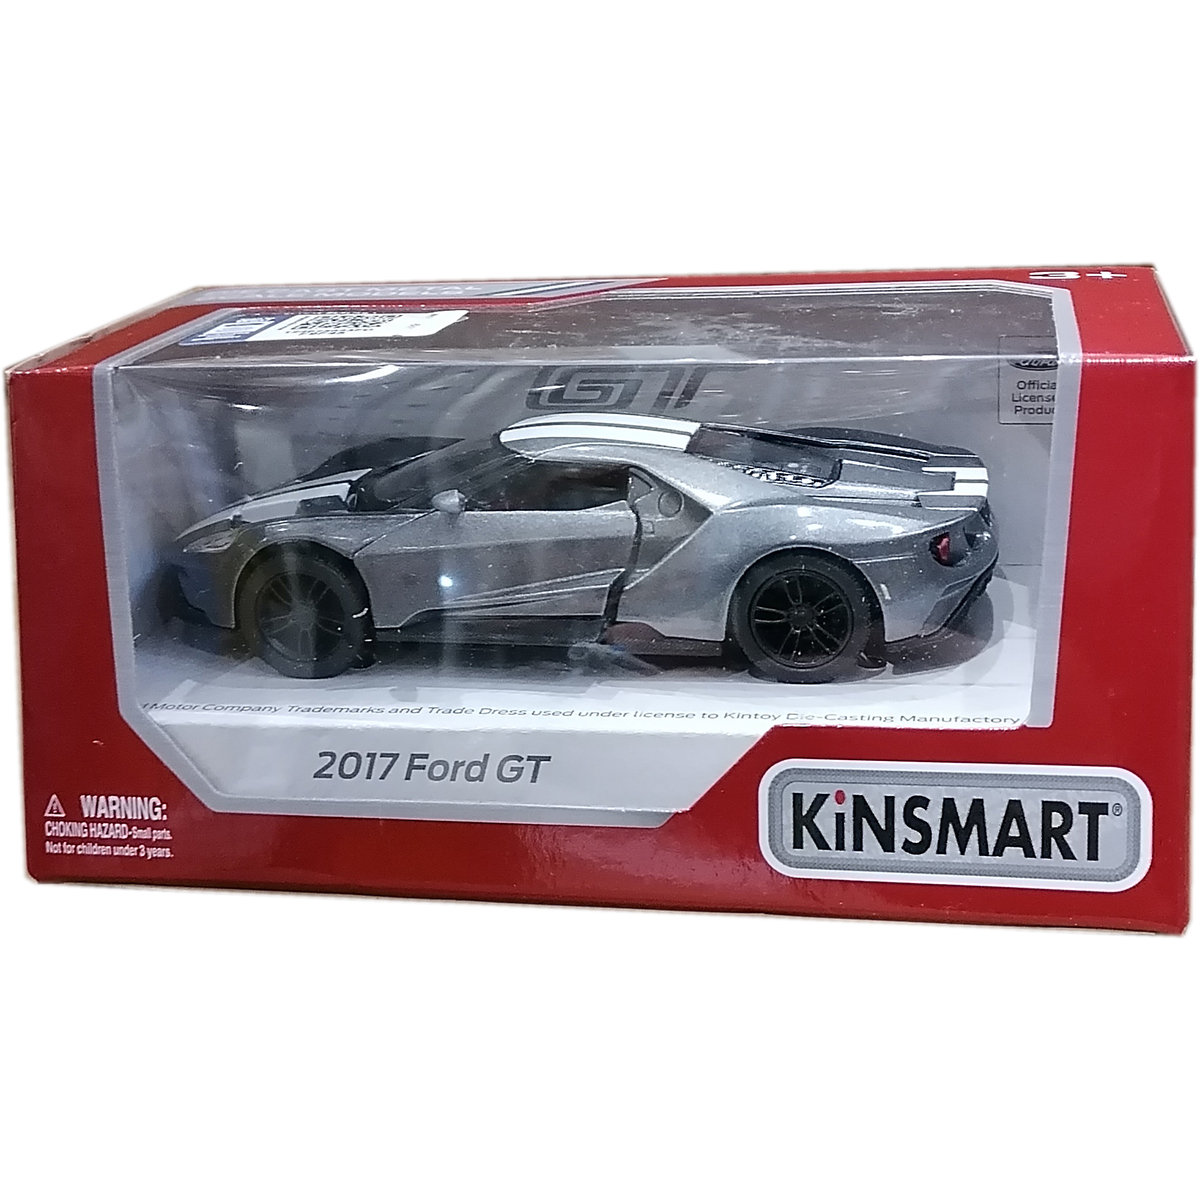 Masinuta din metal Kinsmart, Ford GT 2017, Gri